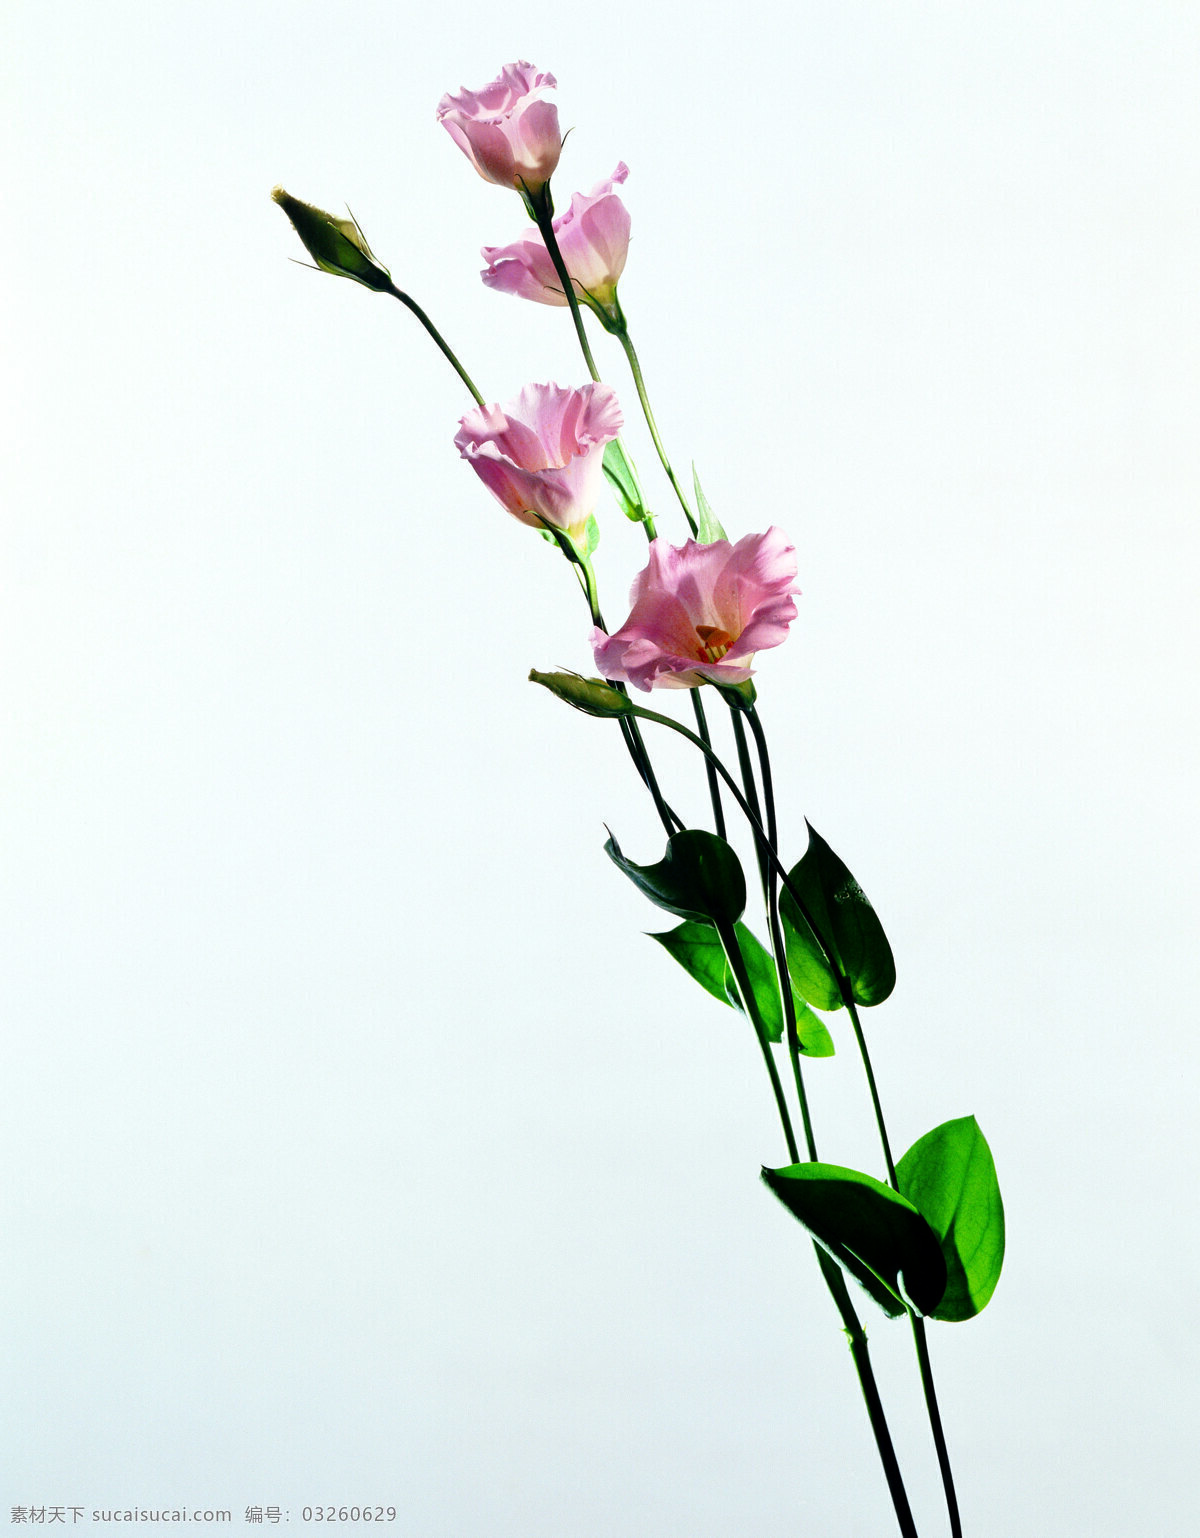 精品 花卉 系列 单株 花朵 共享 生物世界 花草 精品花卉素材 摄影图库